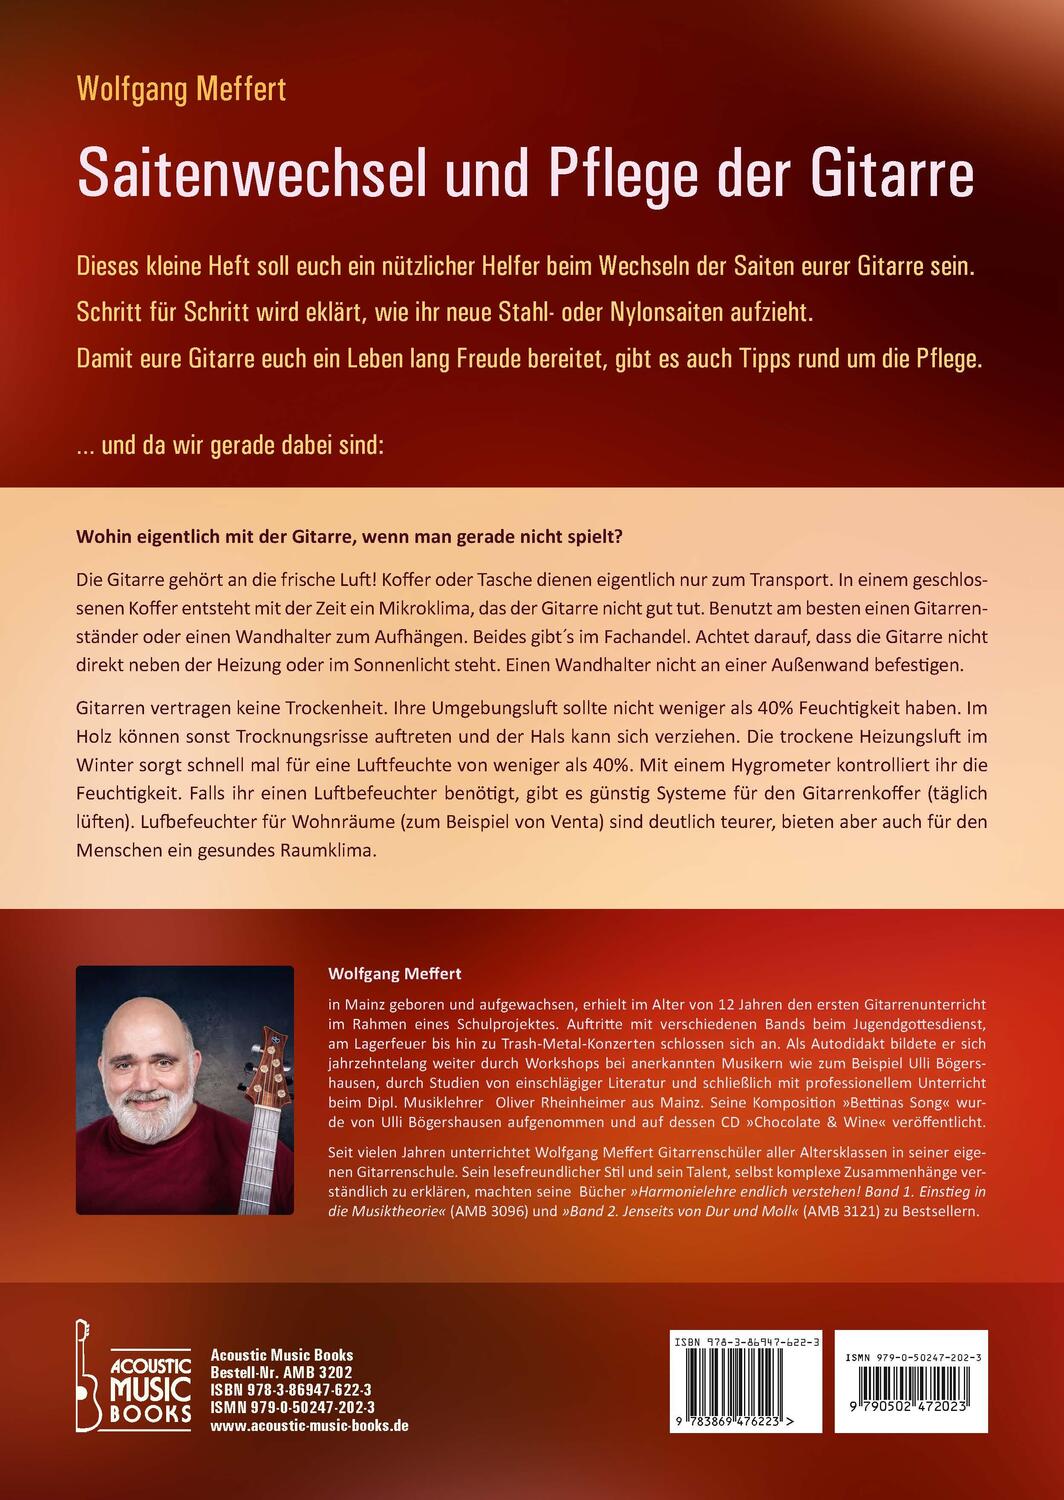 Rückseite: 9783869476223 | Saitenwechsel und Pflege der Gitarre | Wolfgang Meffert | Broschüre